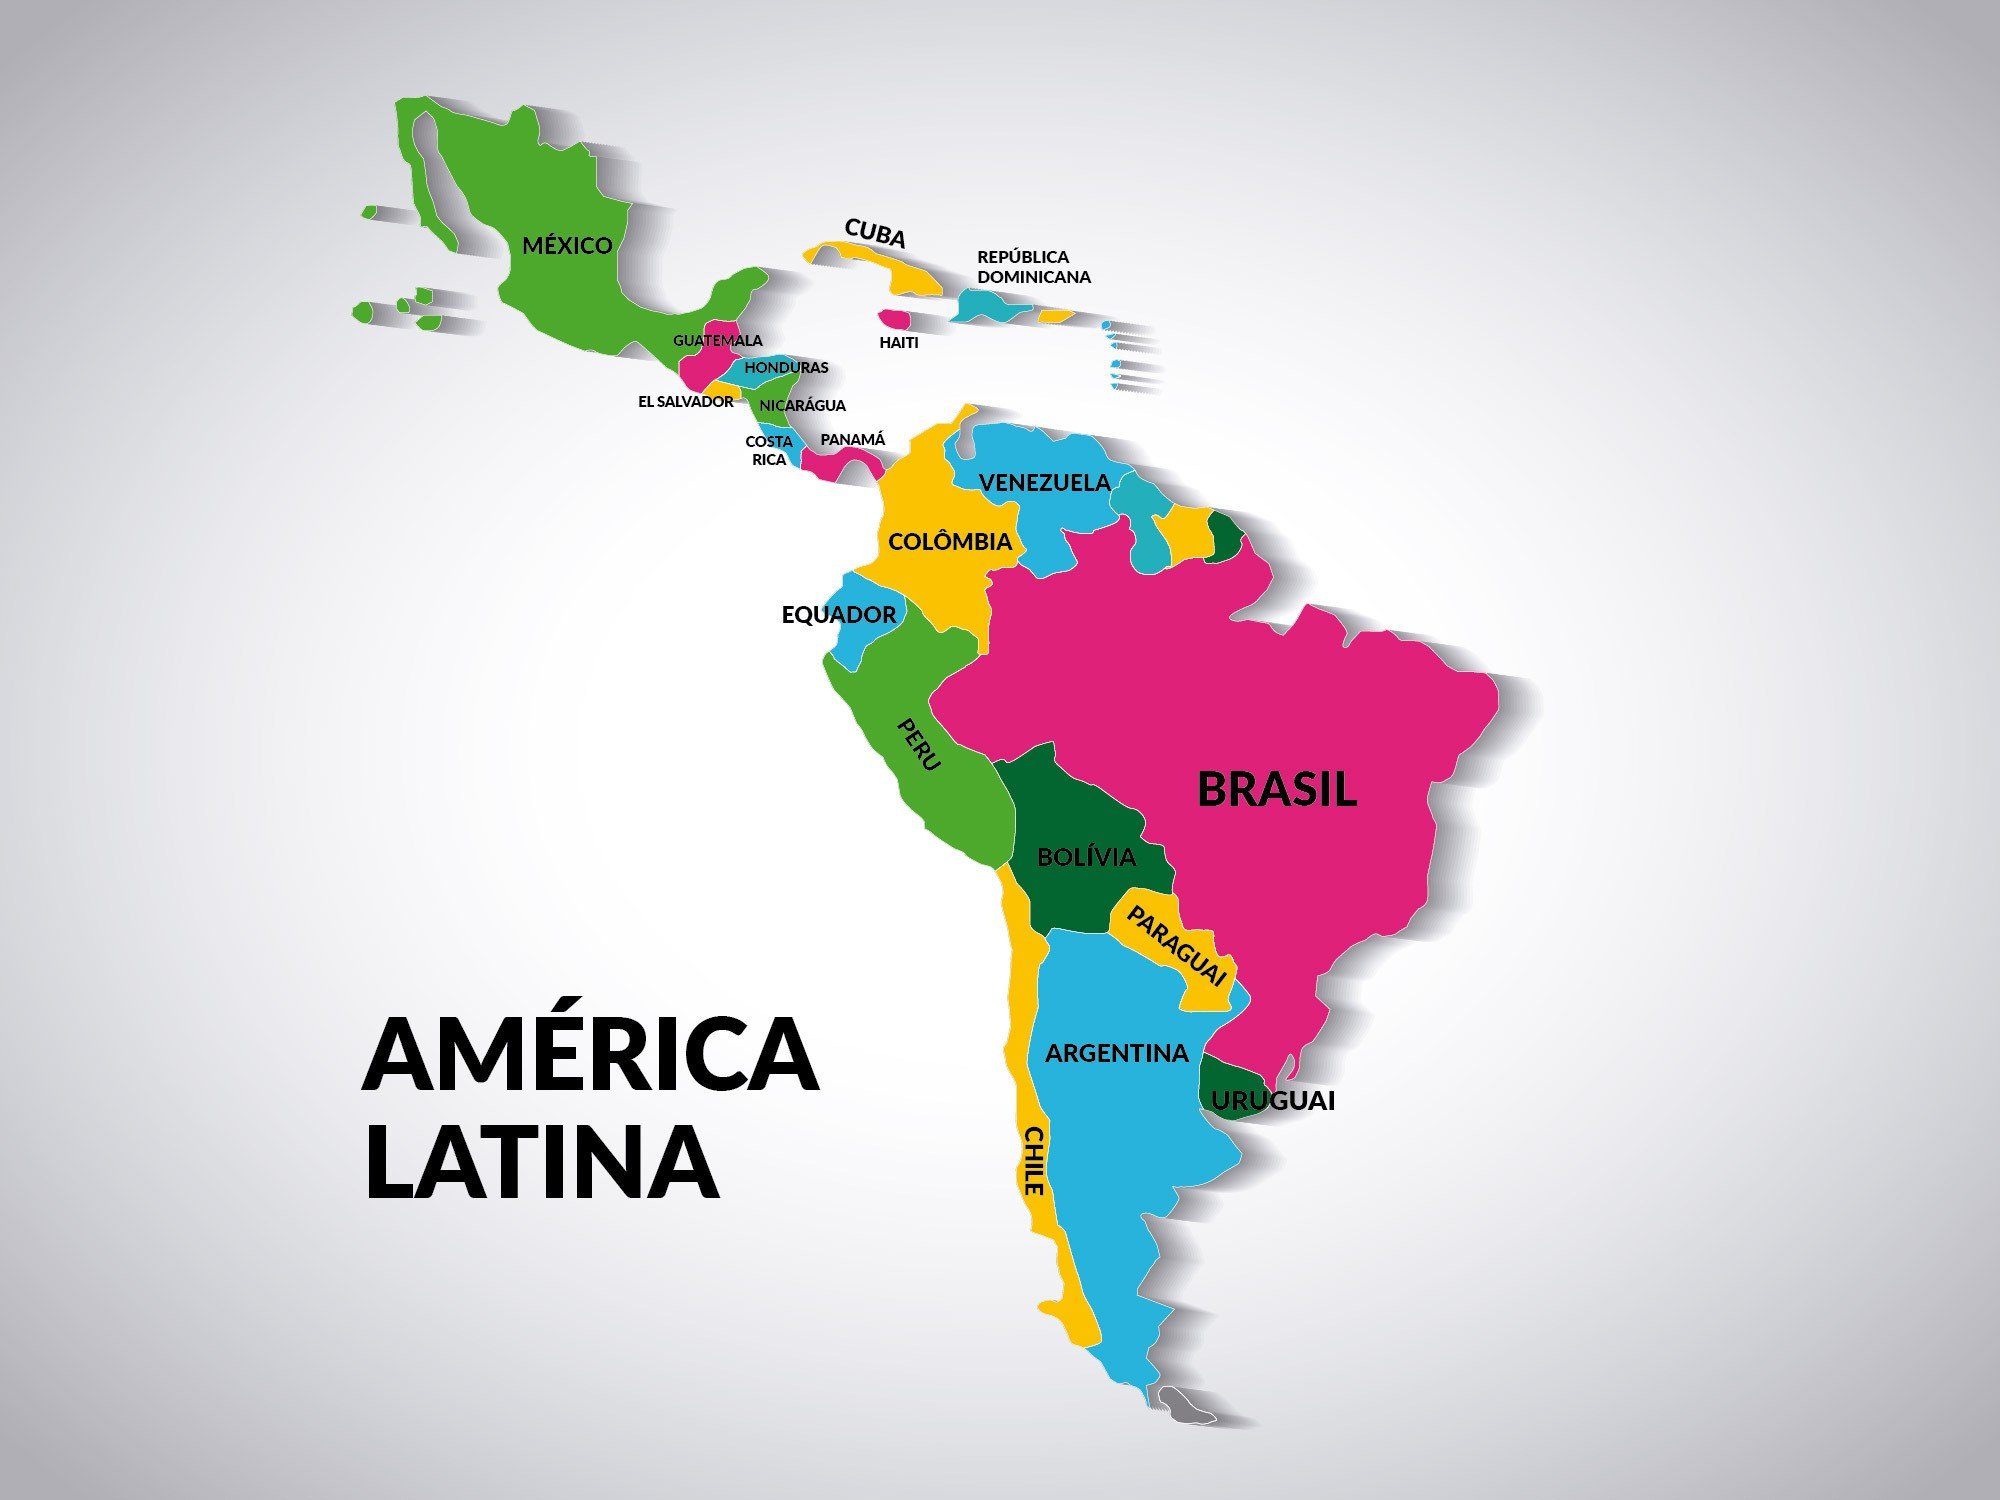 Mapa político da América Latina com os países ilustrados em cores distintas.